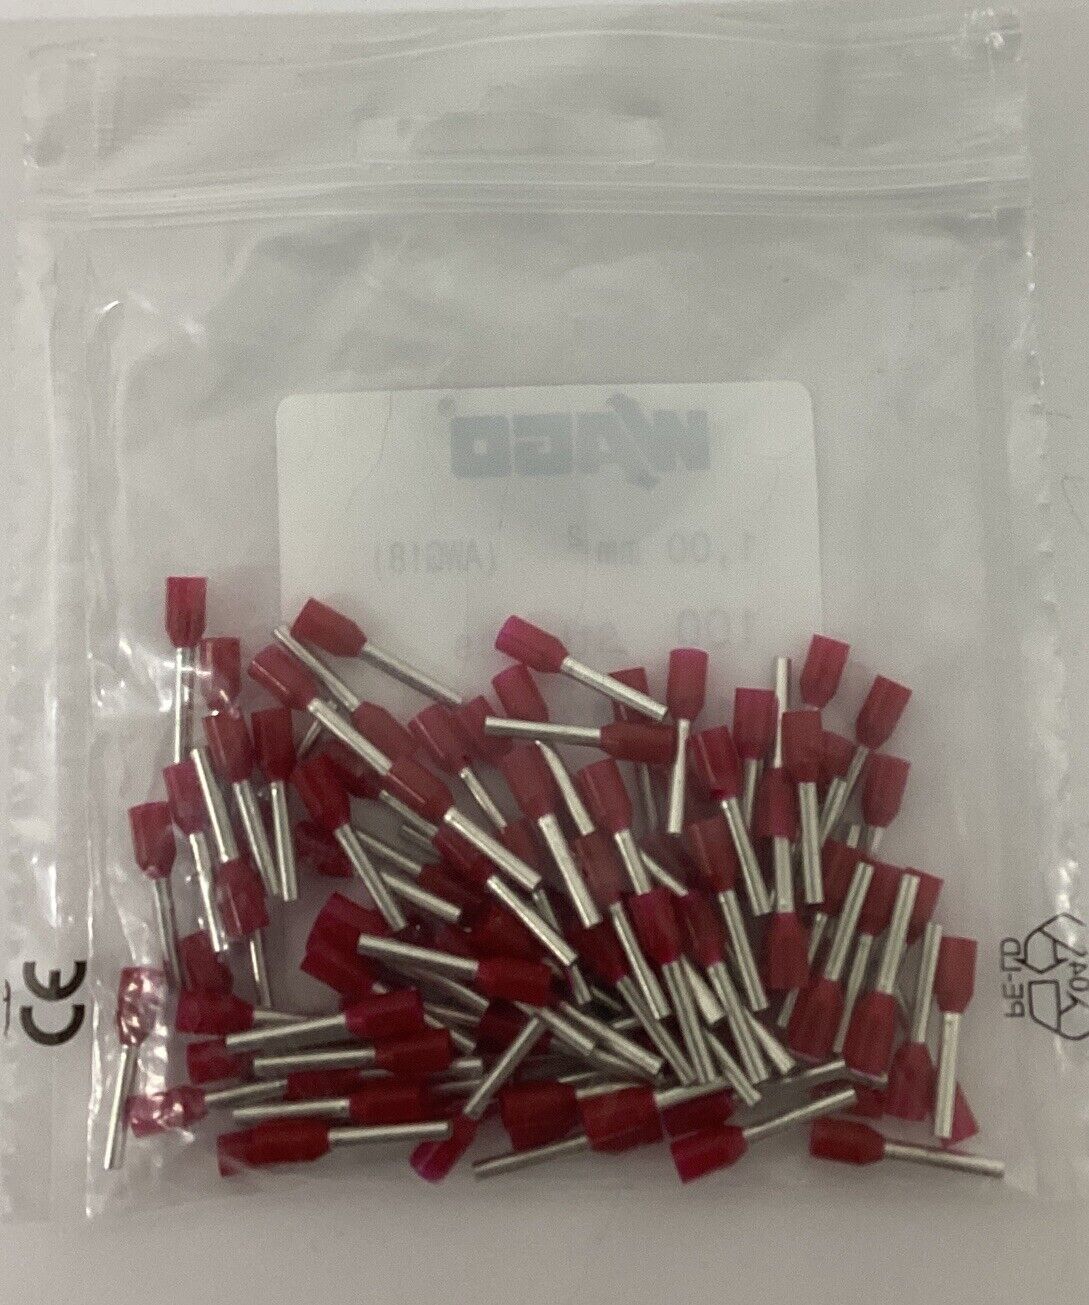 Wago 216-243 Package of 100 Ferrule 18 AWG Red (YE257) - 0